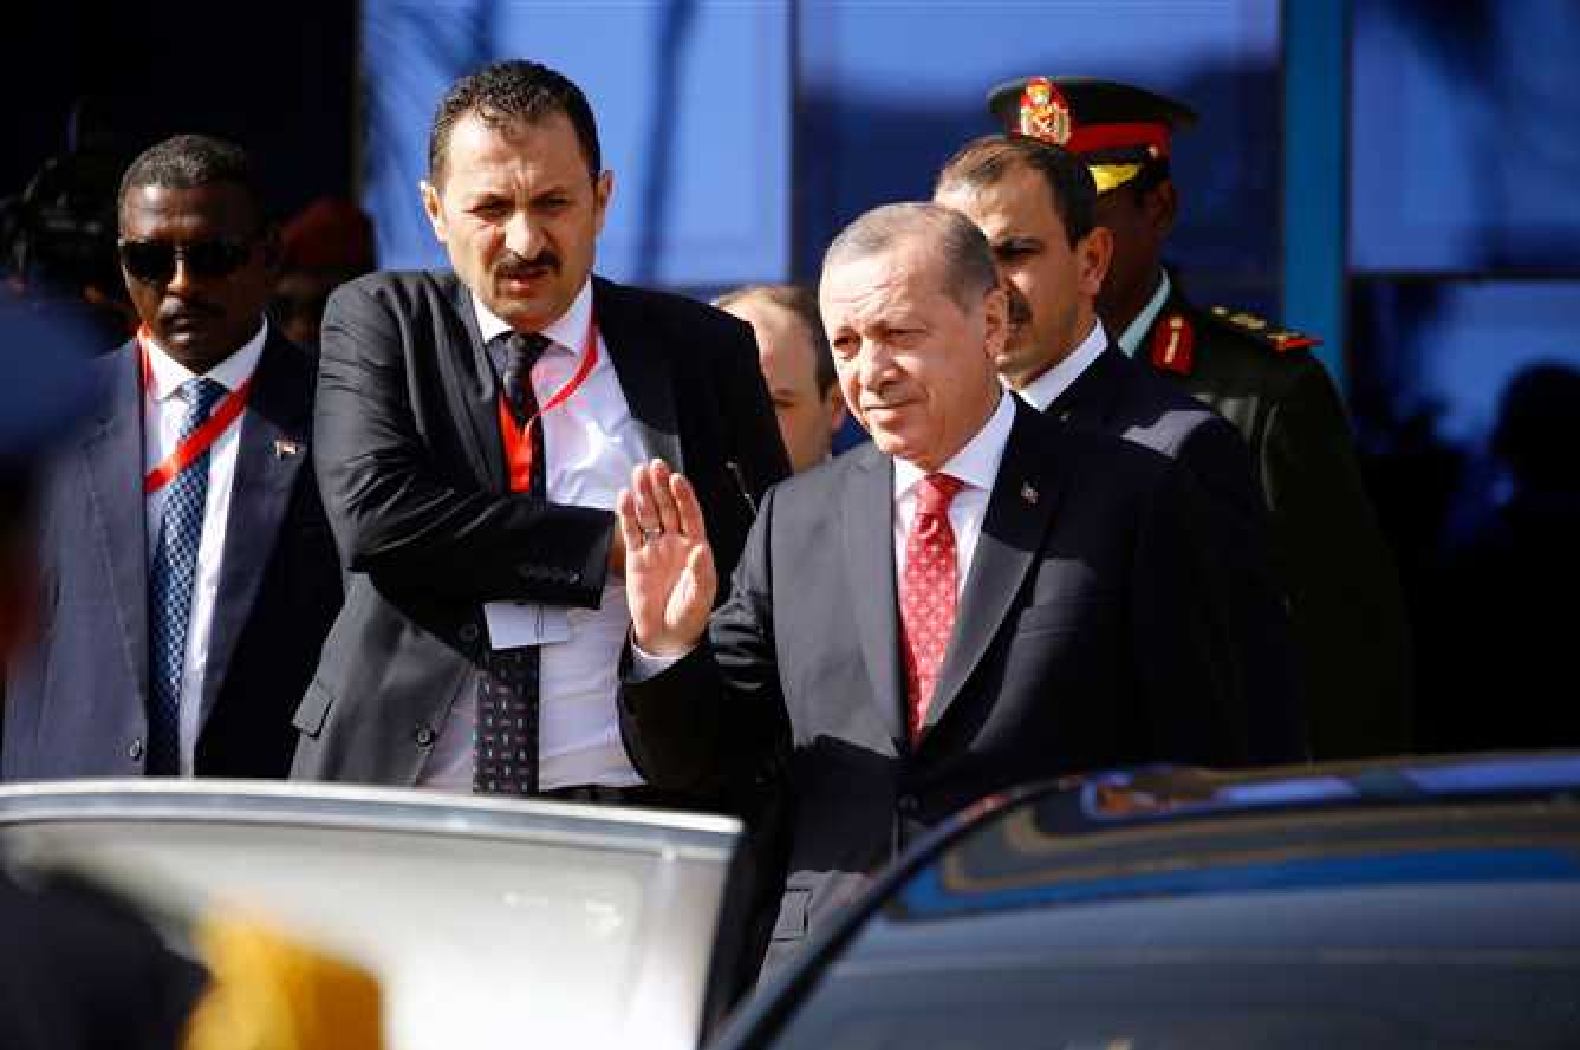 رجب طيب أردوغان في أول زيارة لرئيس تركي منذ عام 1956 إلى السودان في 24 ديسمبر/ كانون الأول 2017 (وكالات)